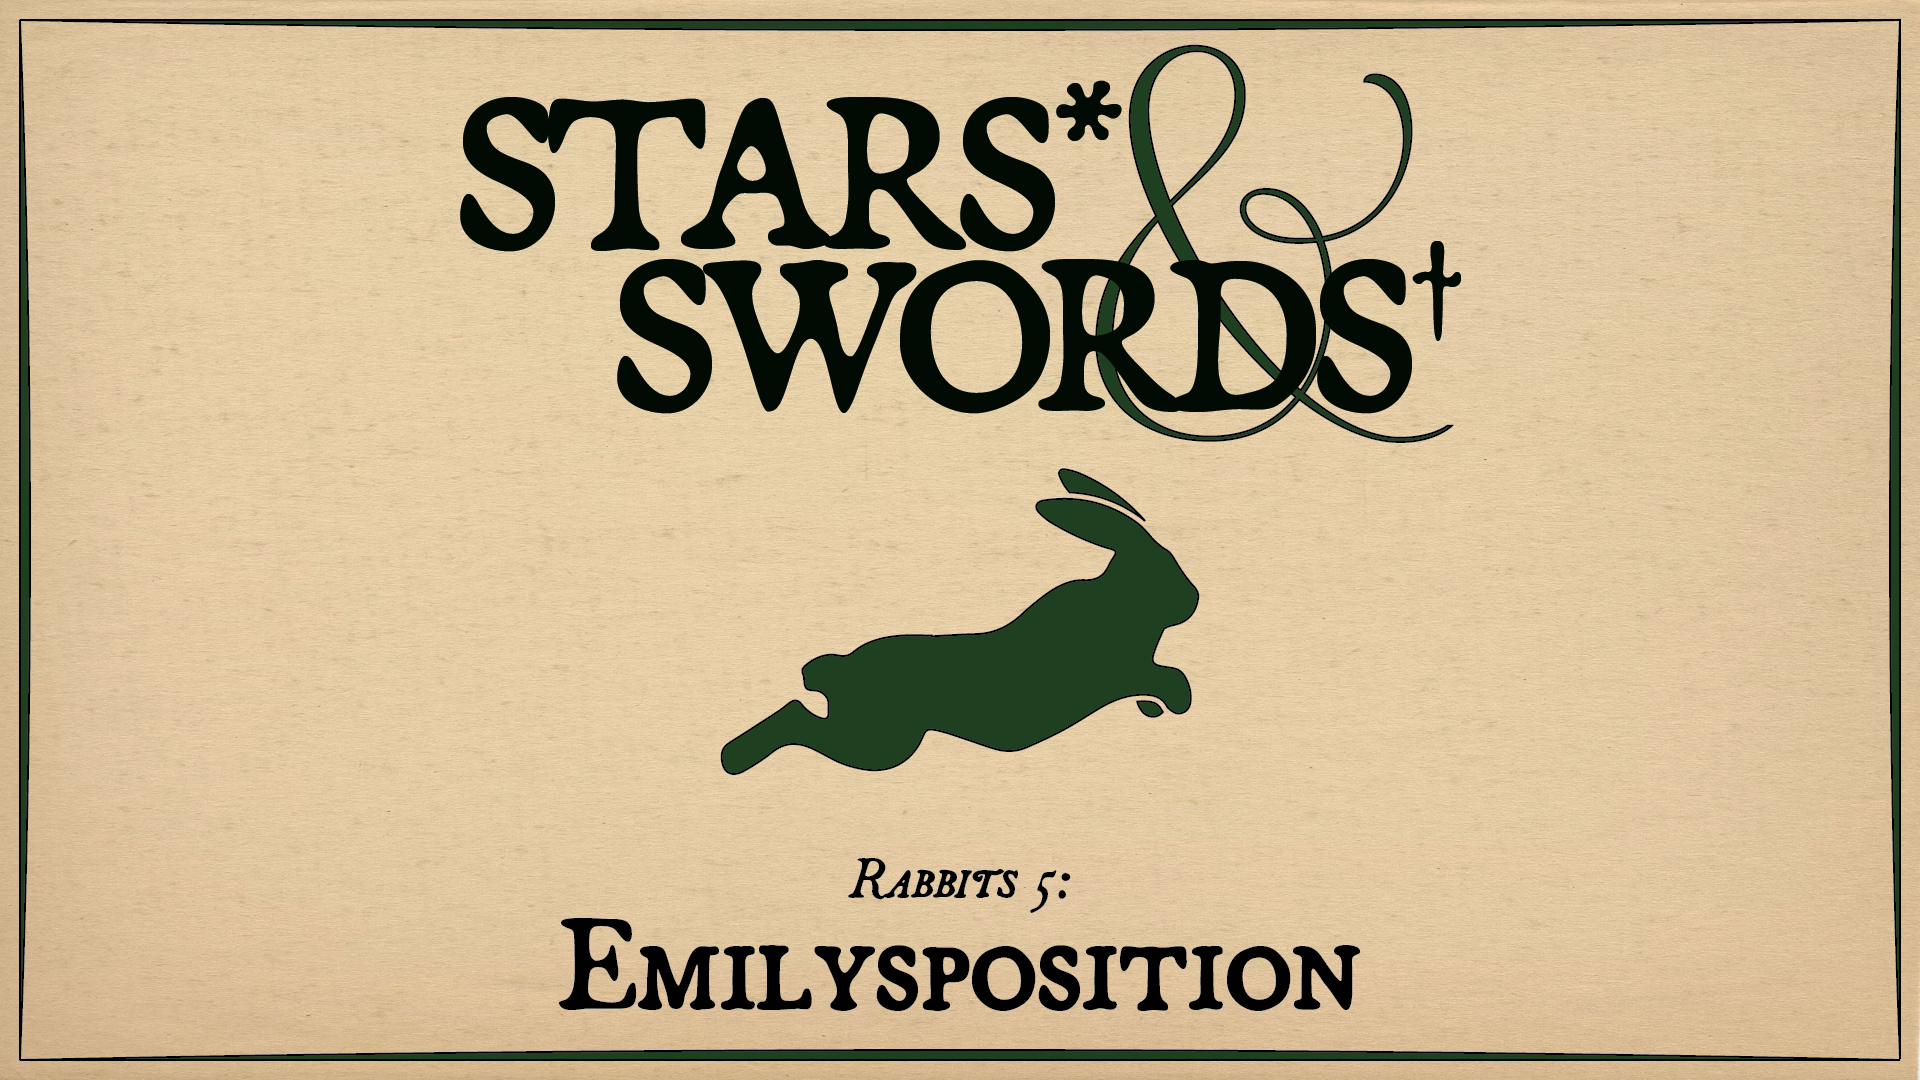 Rabbits 5: Emilysposition